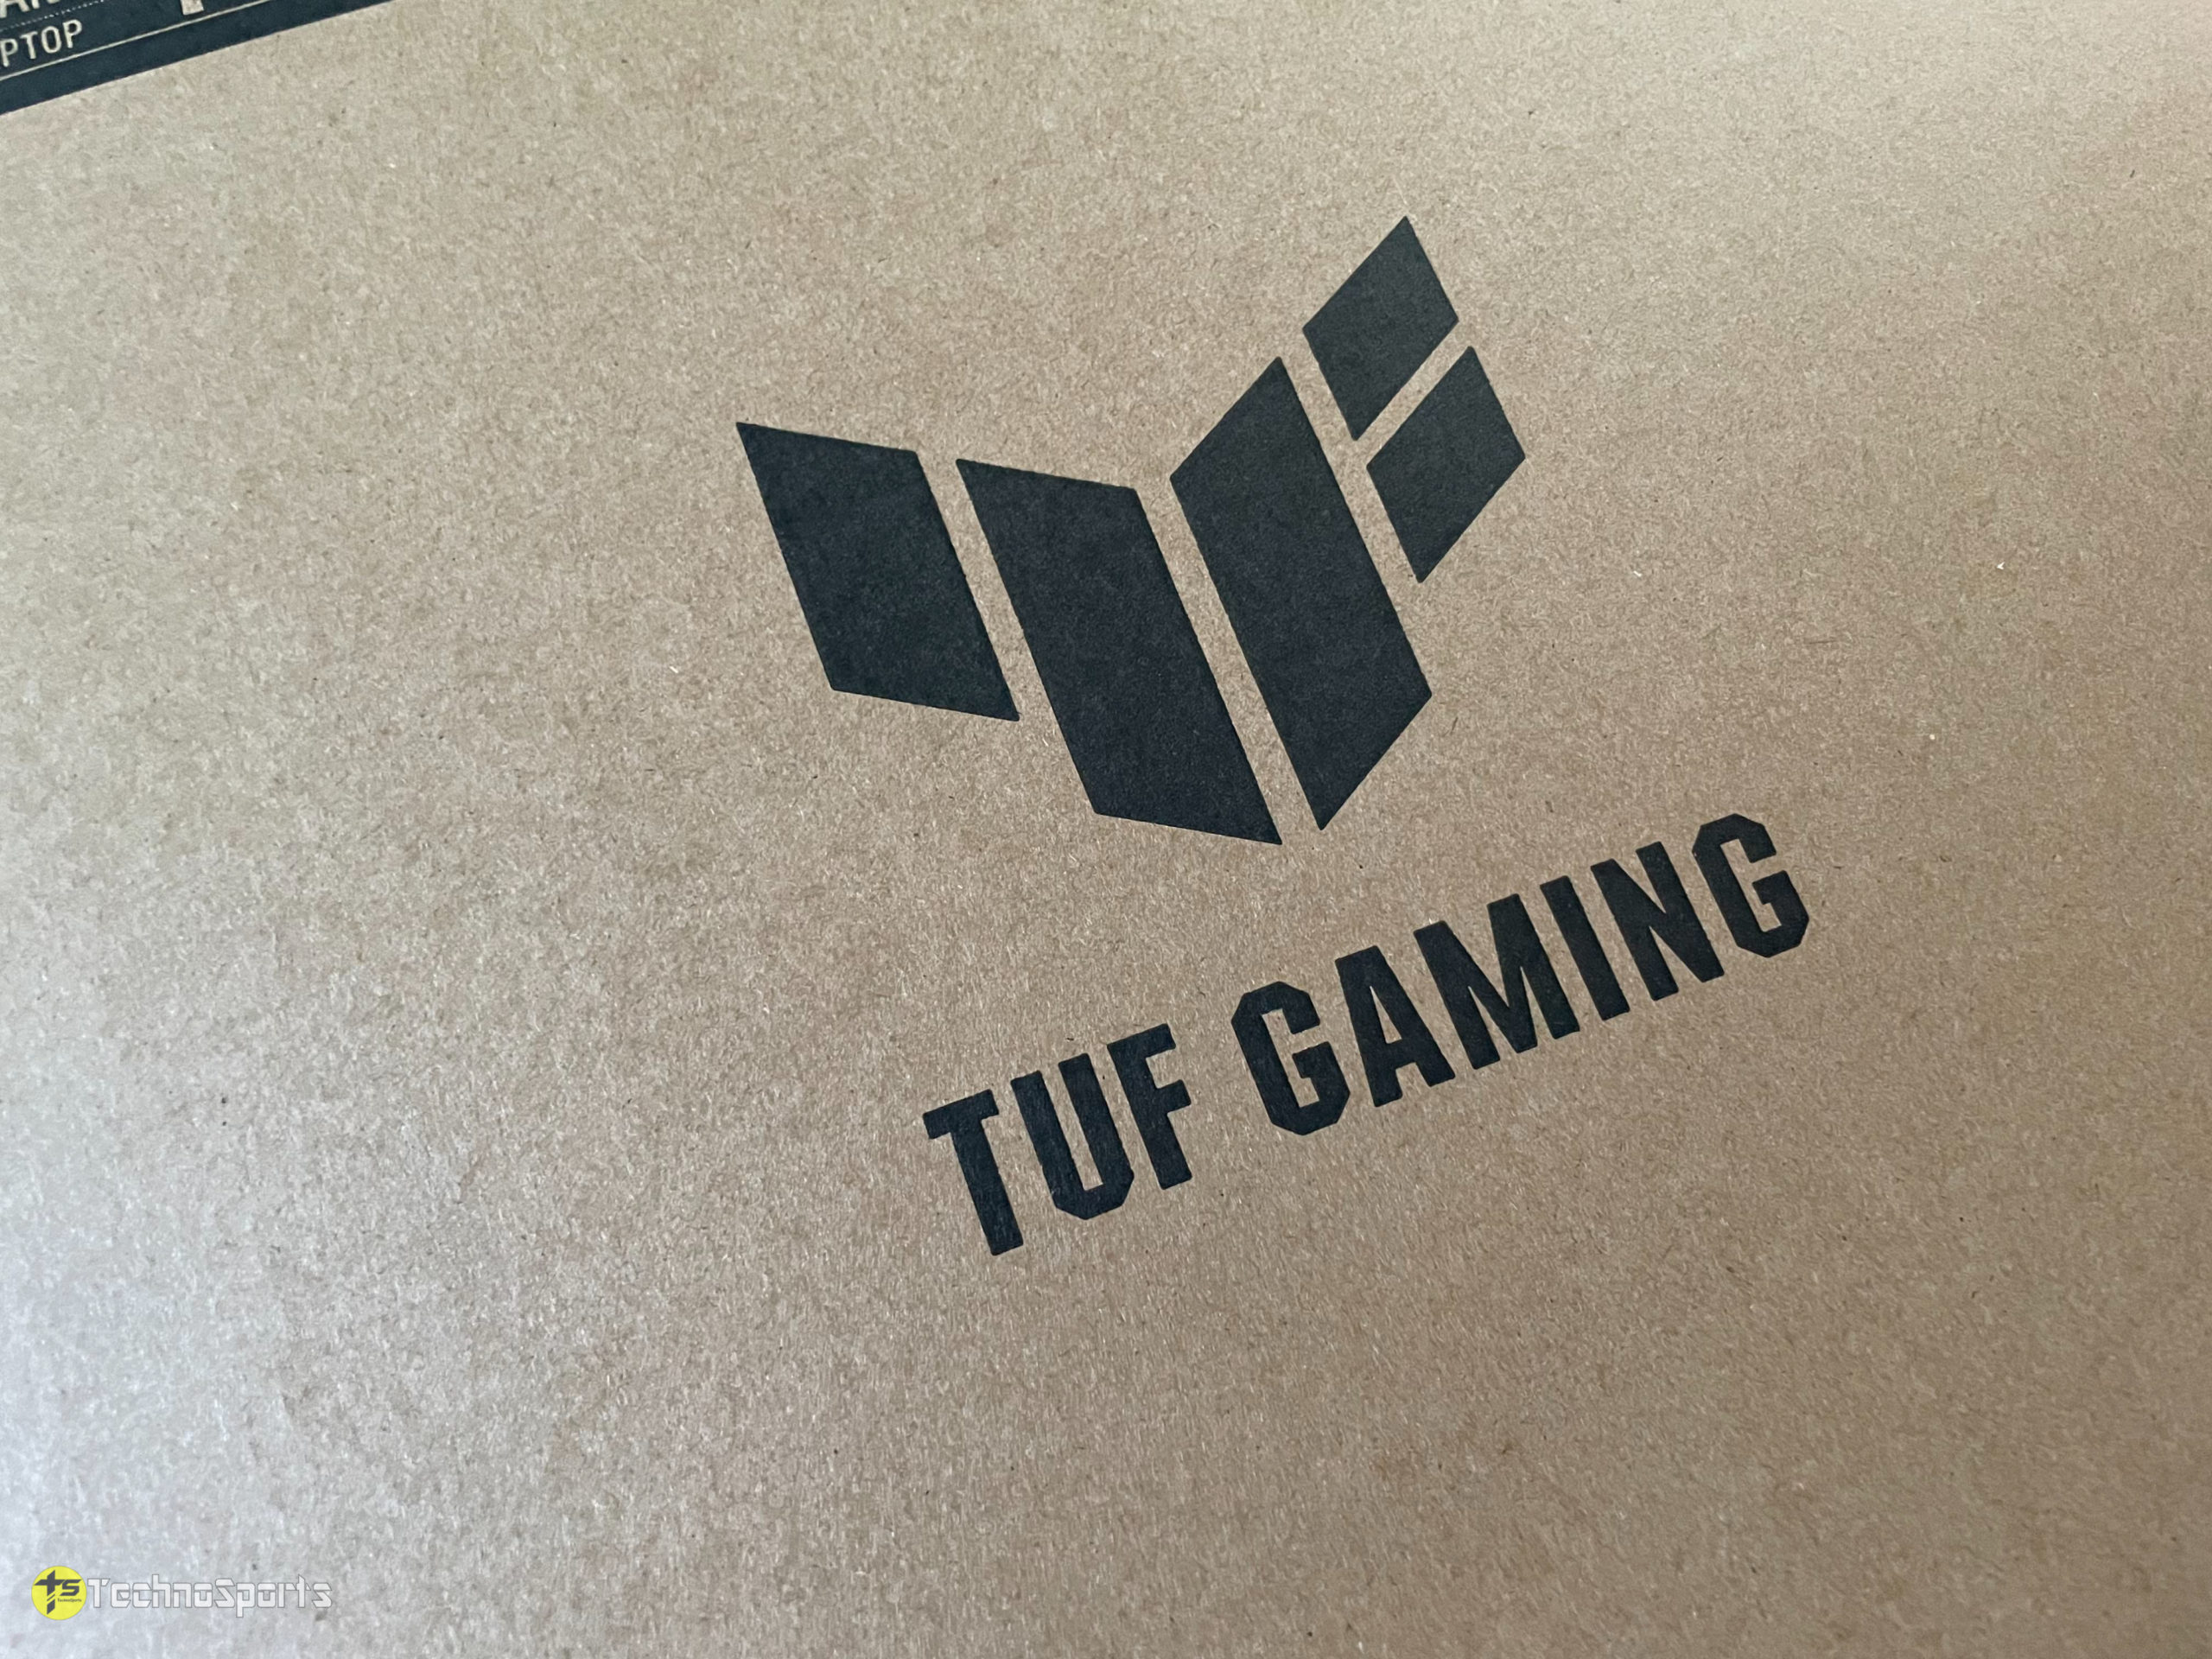 ASUS TUF Gaming F15 review